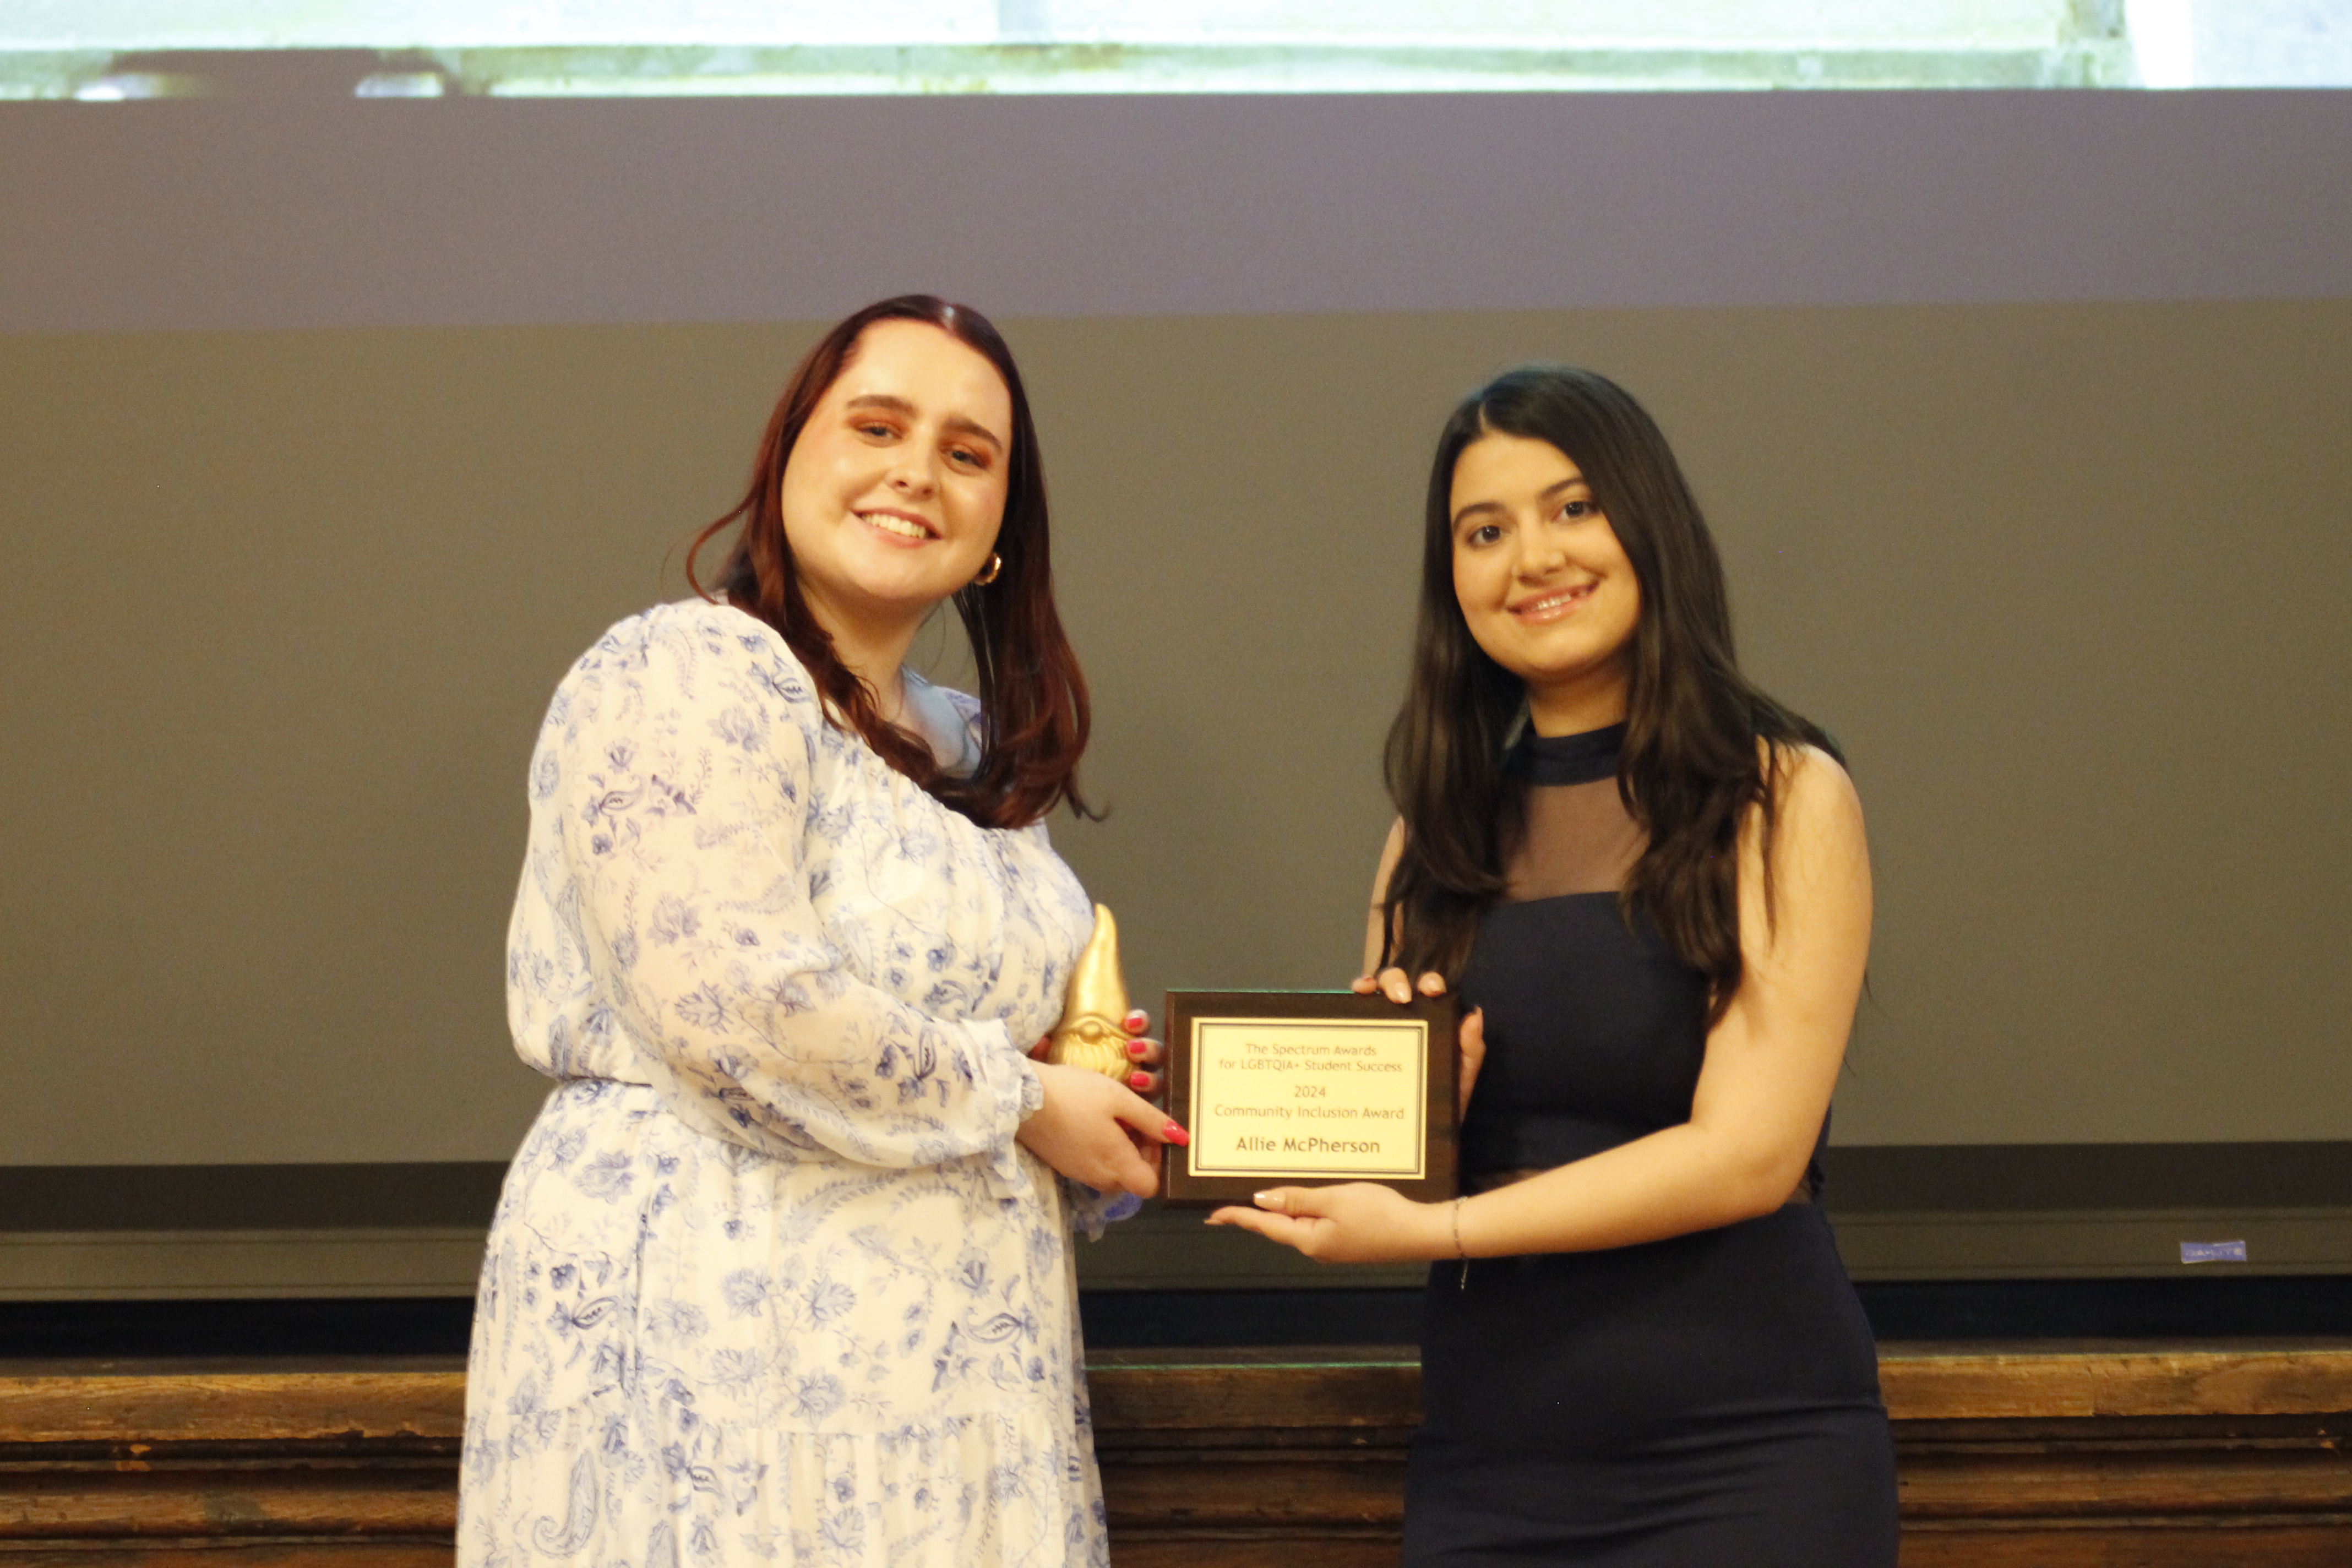 Vasudha Arora presenting award to Allie McPherson 